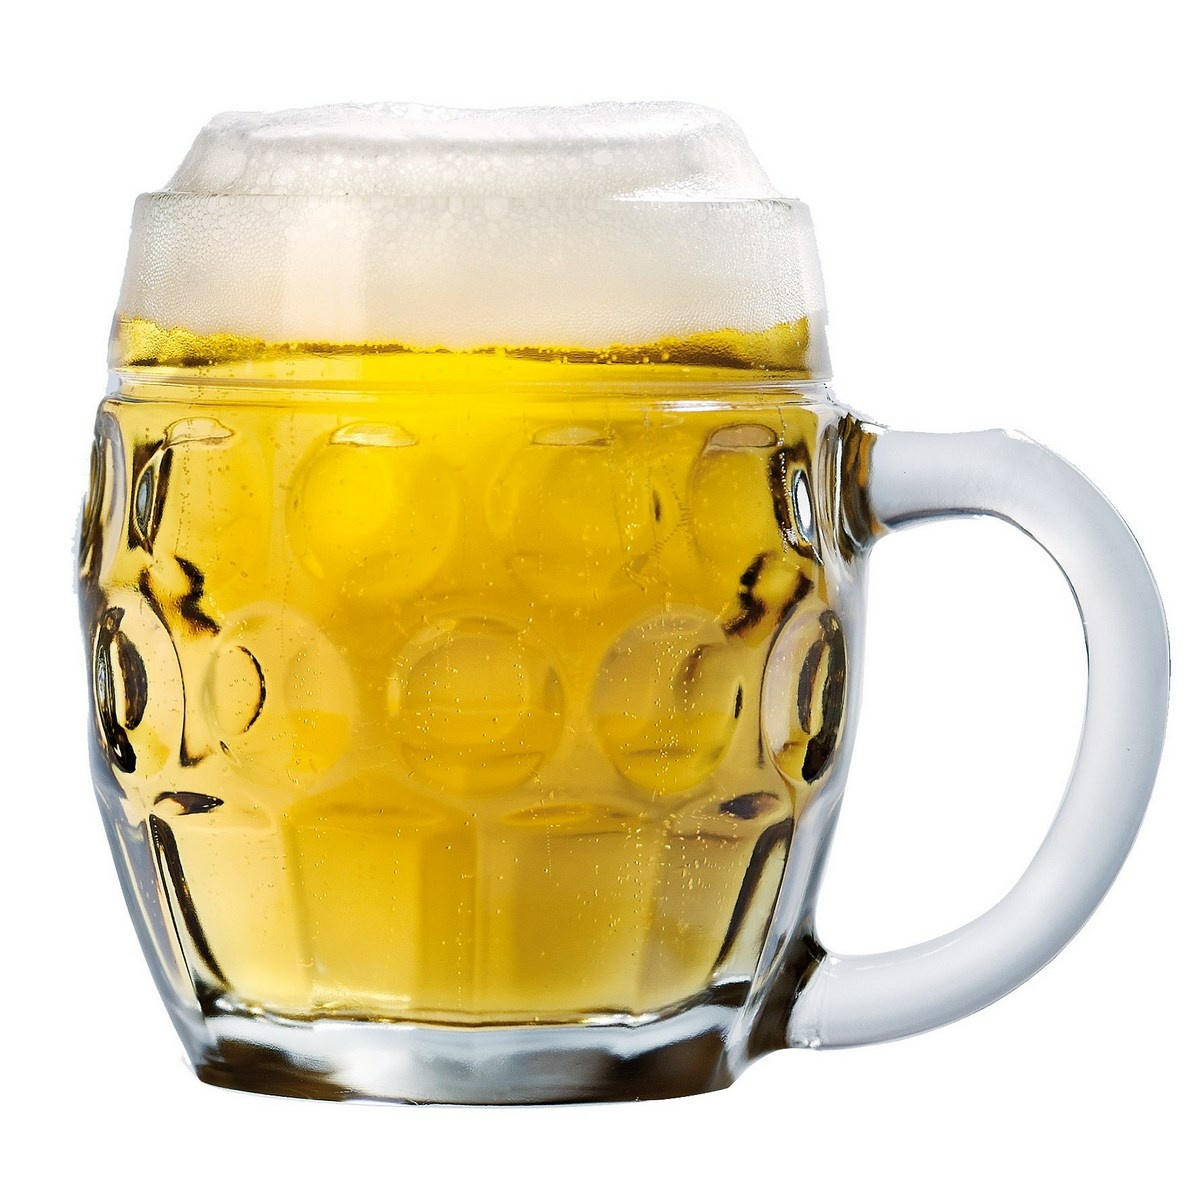 Pivní sklenice s uchem TÜBINGER, 0,5 l